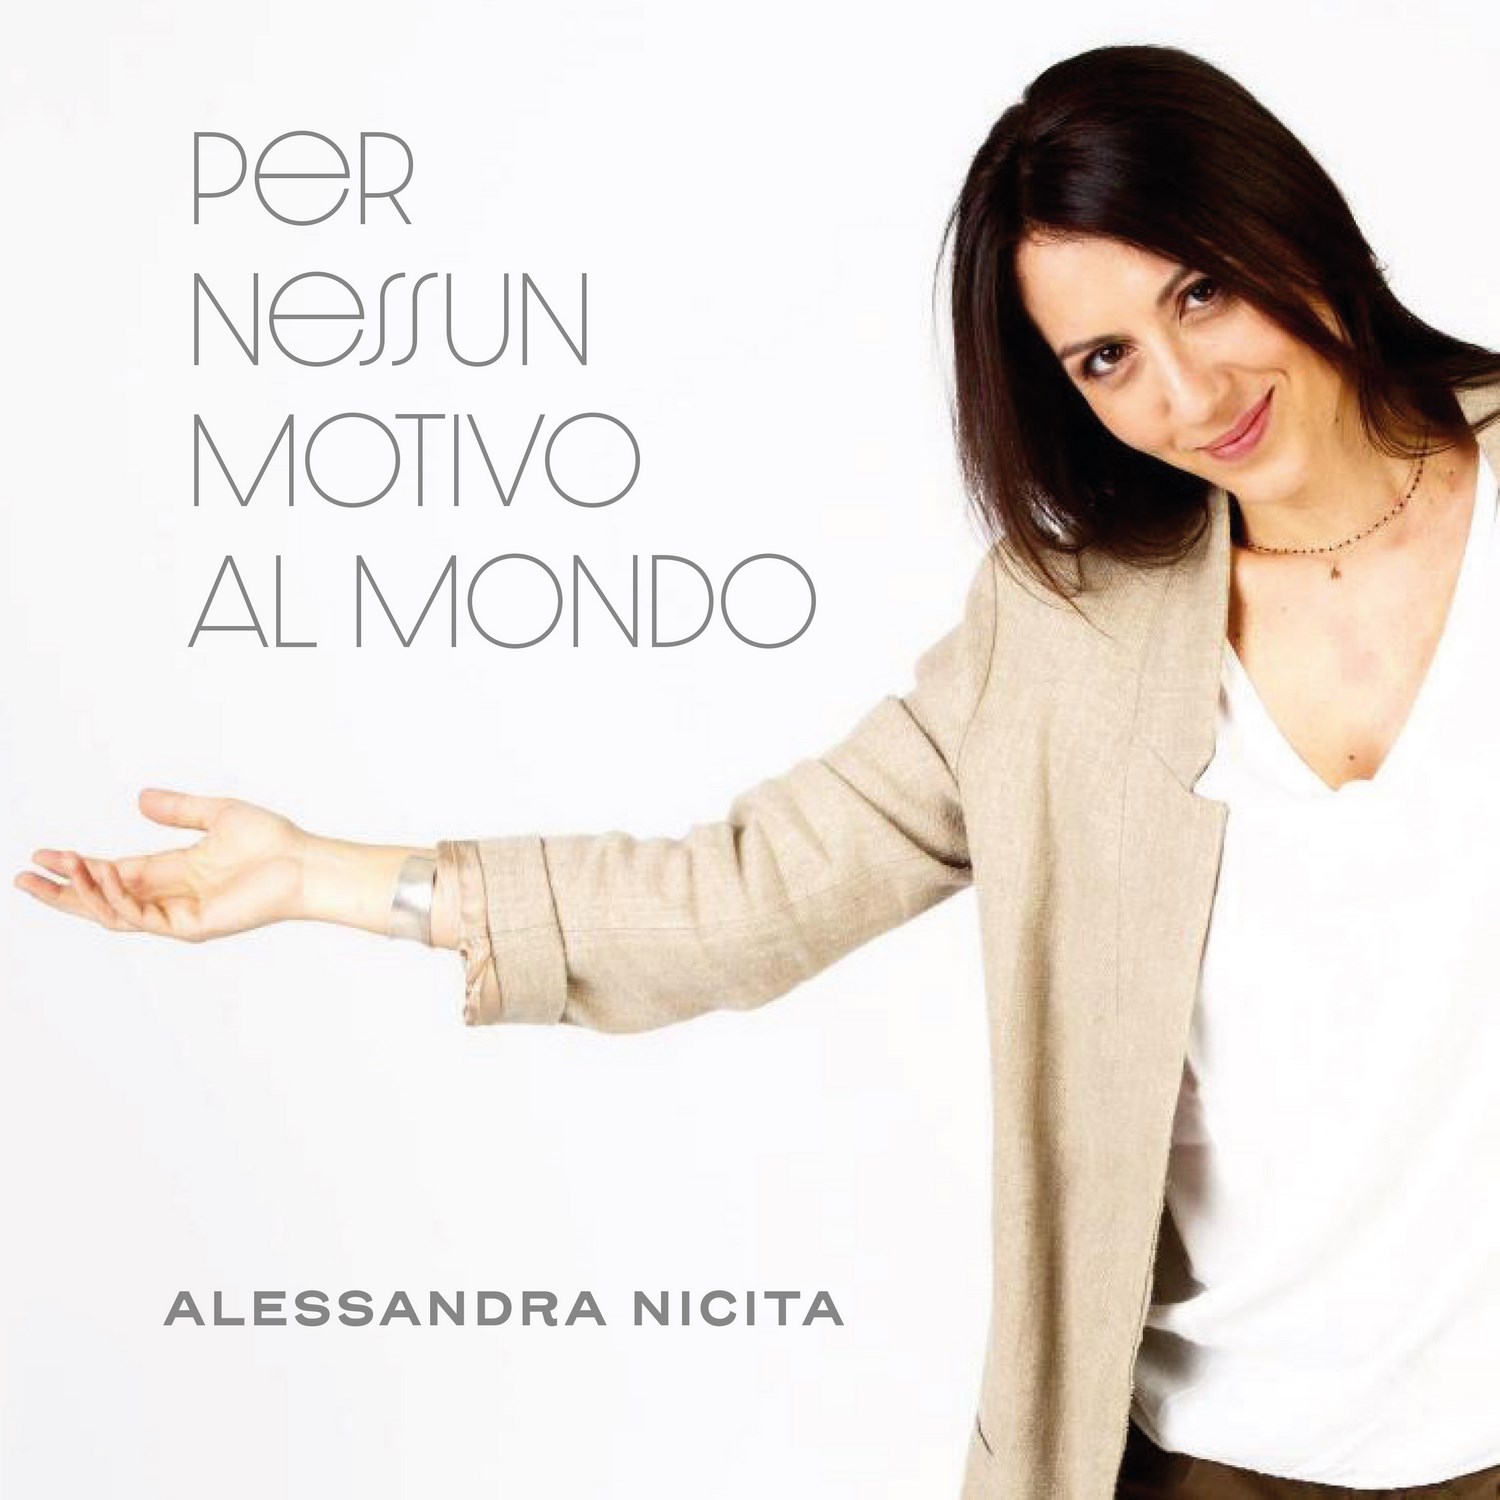 “Per nessun motivo al mondo”, il nuovo singolo di Alessandra Nicita in finale per il Premio “Mia Martini 2019”